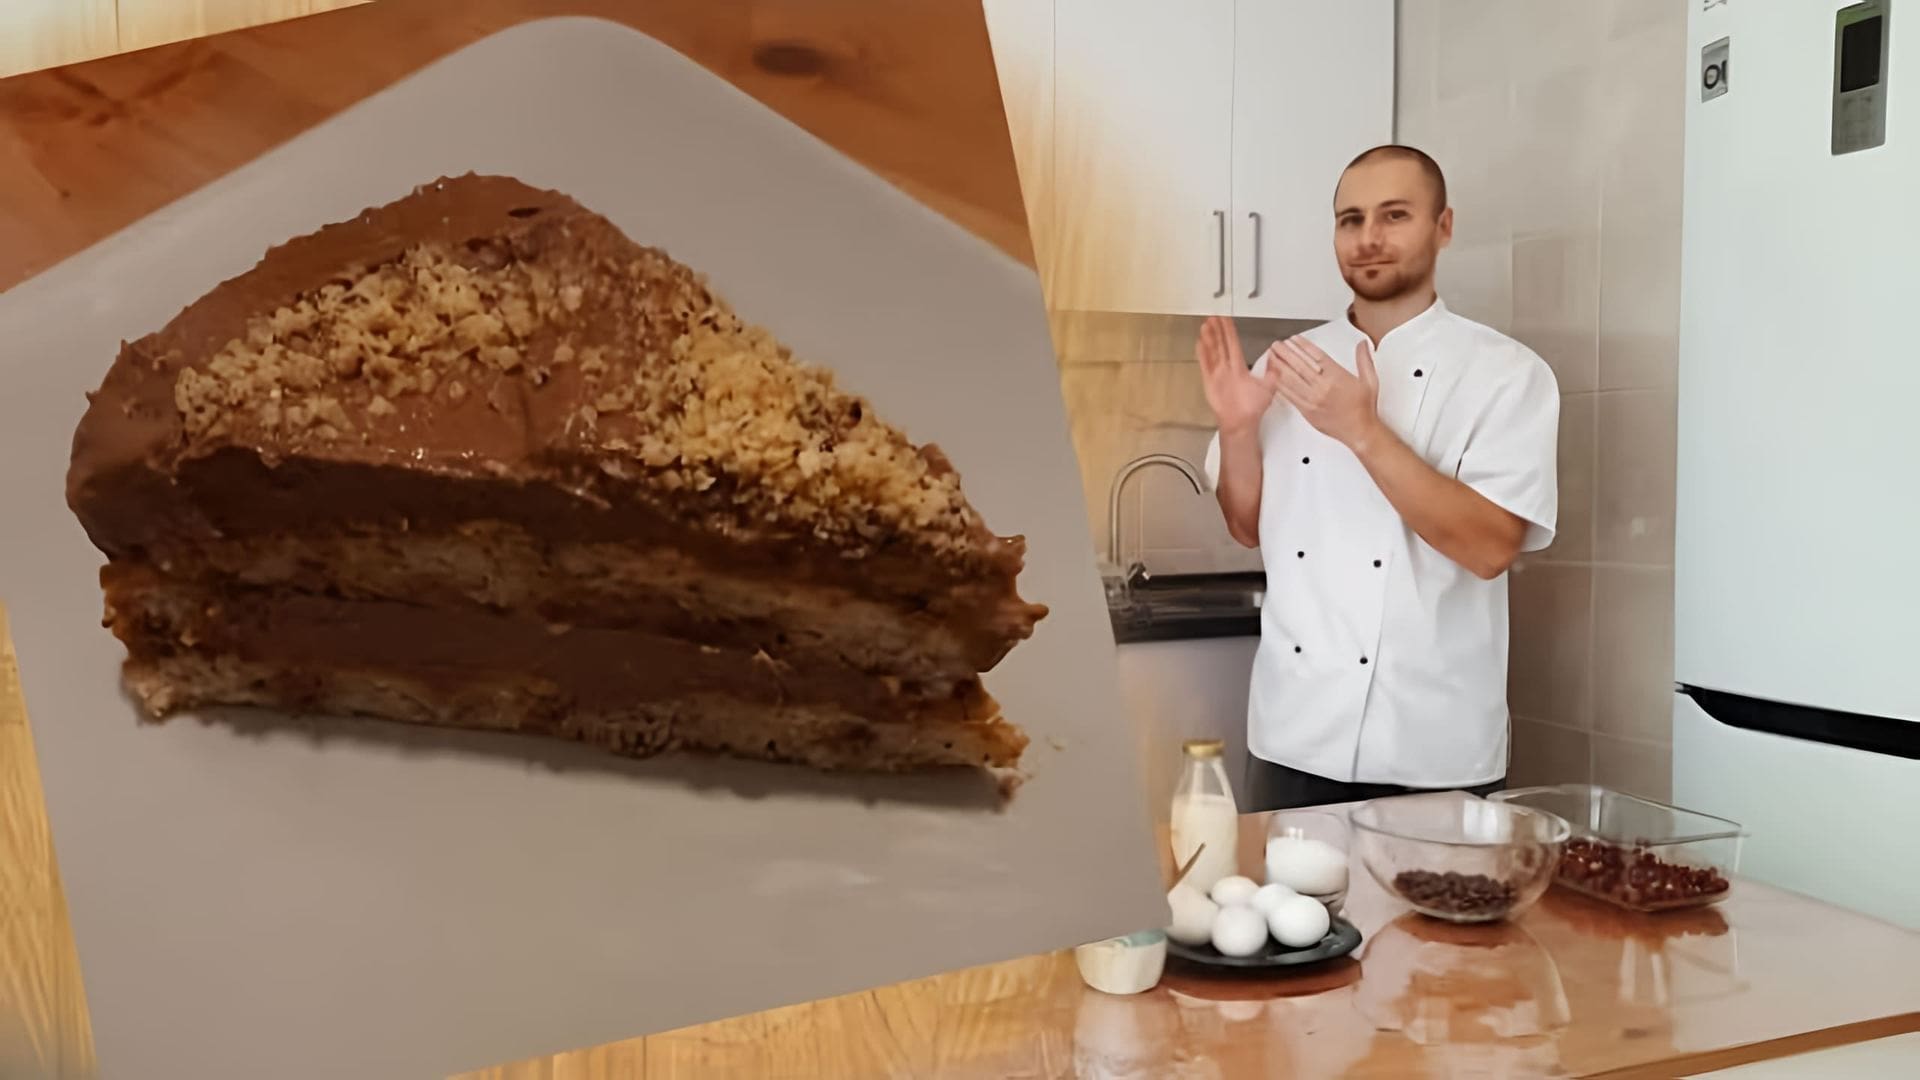 В этом видео демонстрируется процесс приготовления шоколадно-орехового торта